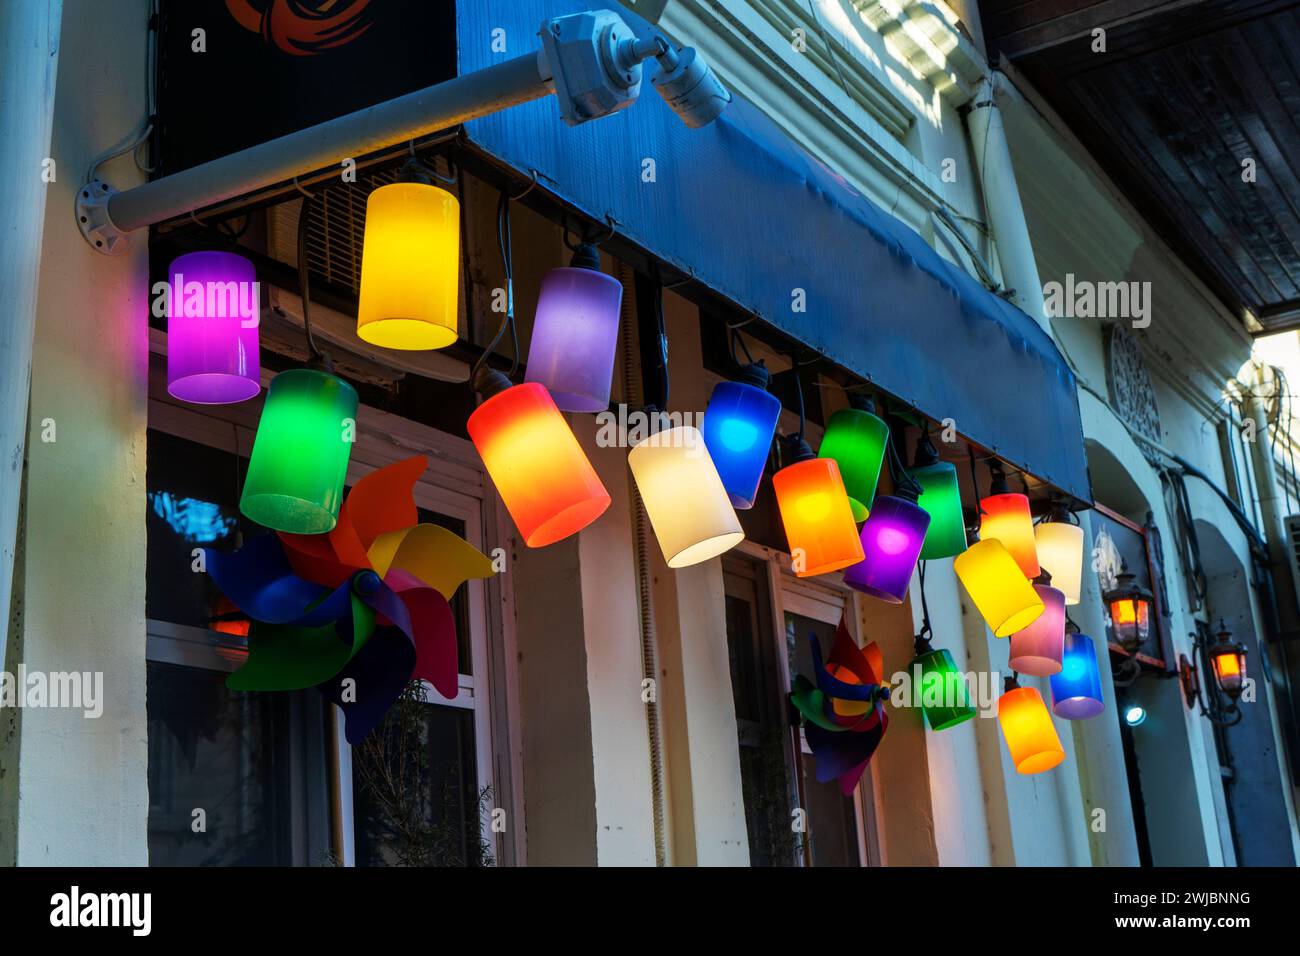 la facciata del cafe' e' decorata, l'entrata e' decorata con vari lampadari, lampade da terra e lampadine colorate Foto Stock